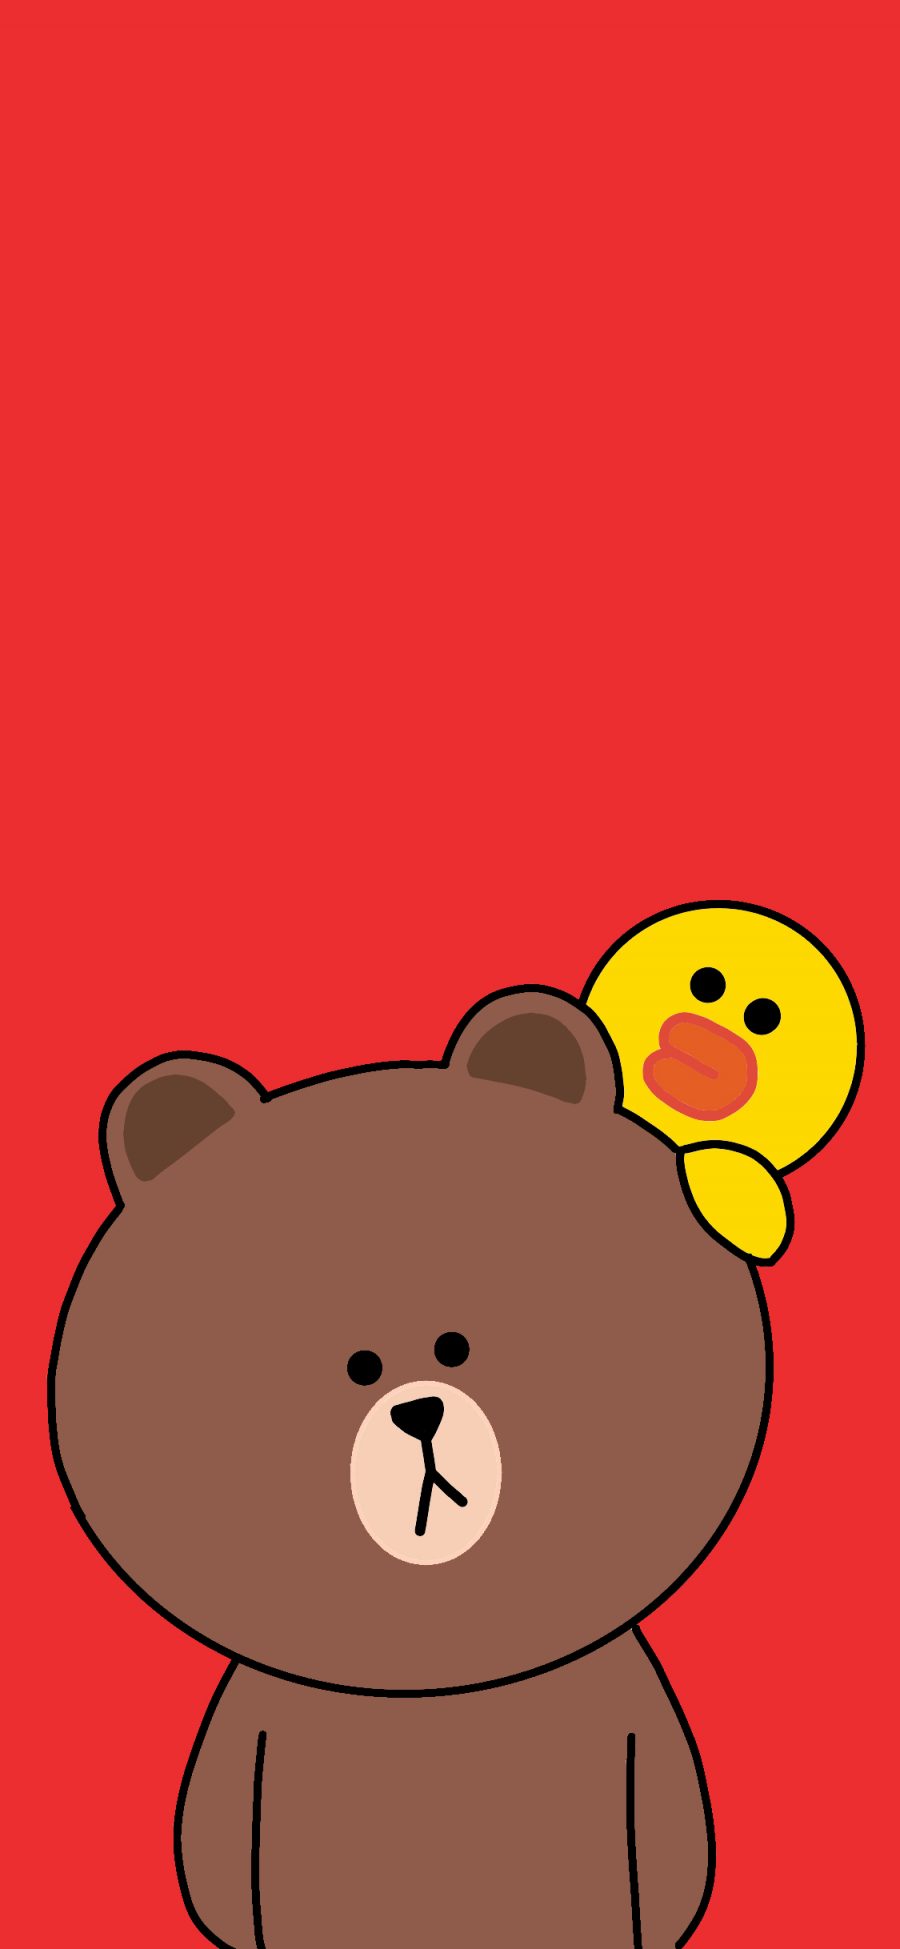 [2436×1125]布朗熊 line friends 可爱 卡通 红色 萨莉鸡 苹果手机动漫壁纸图片